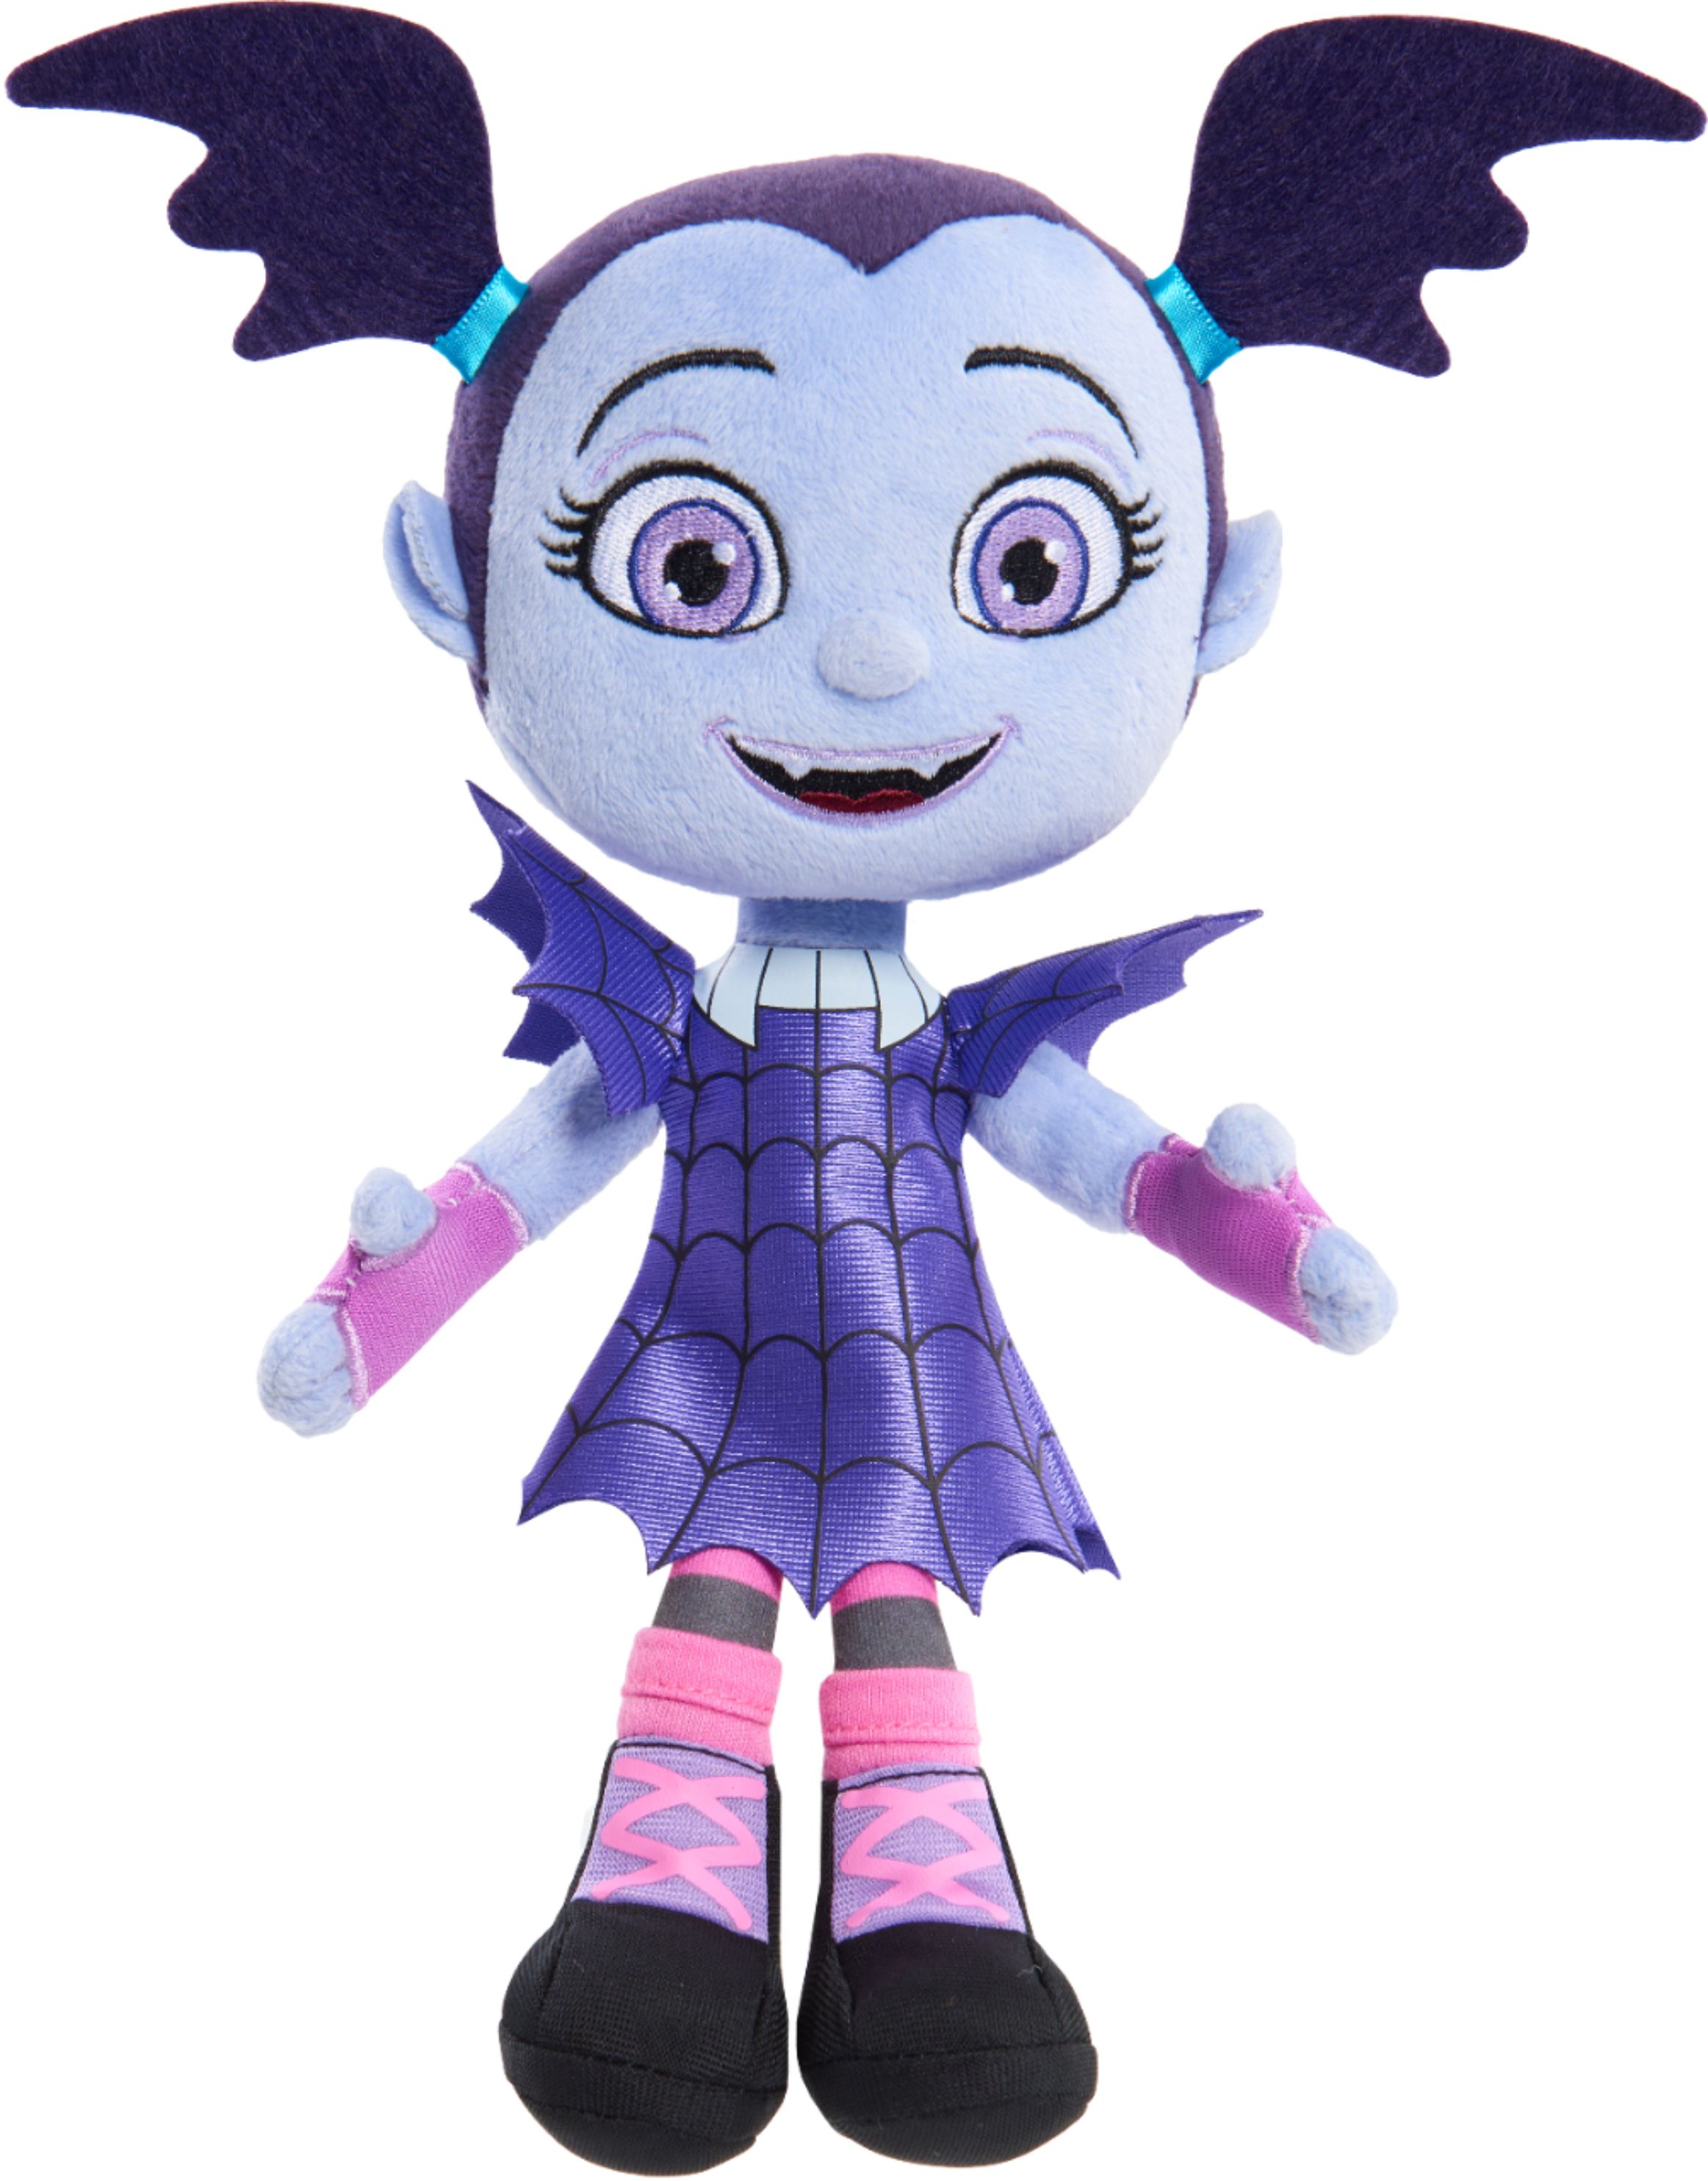 Disney Junior Vampirina Plush Doll New 